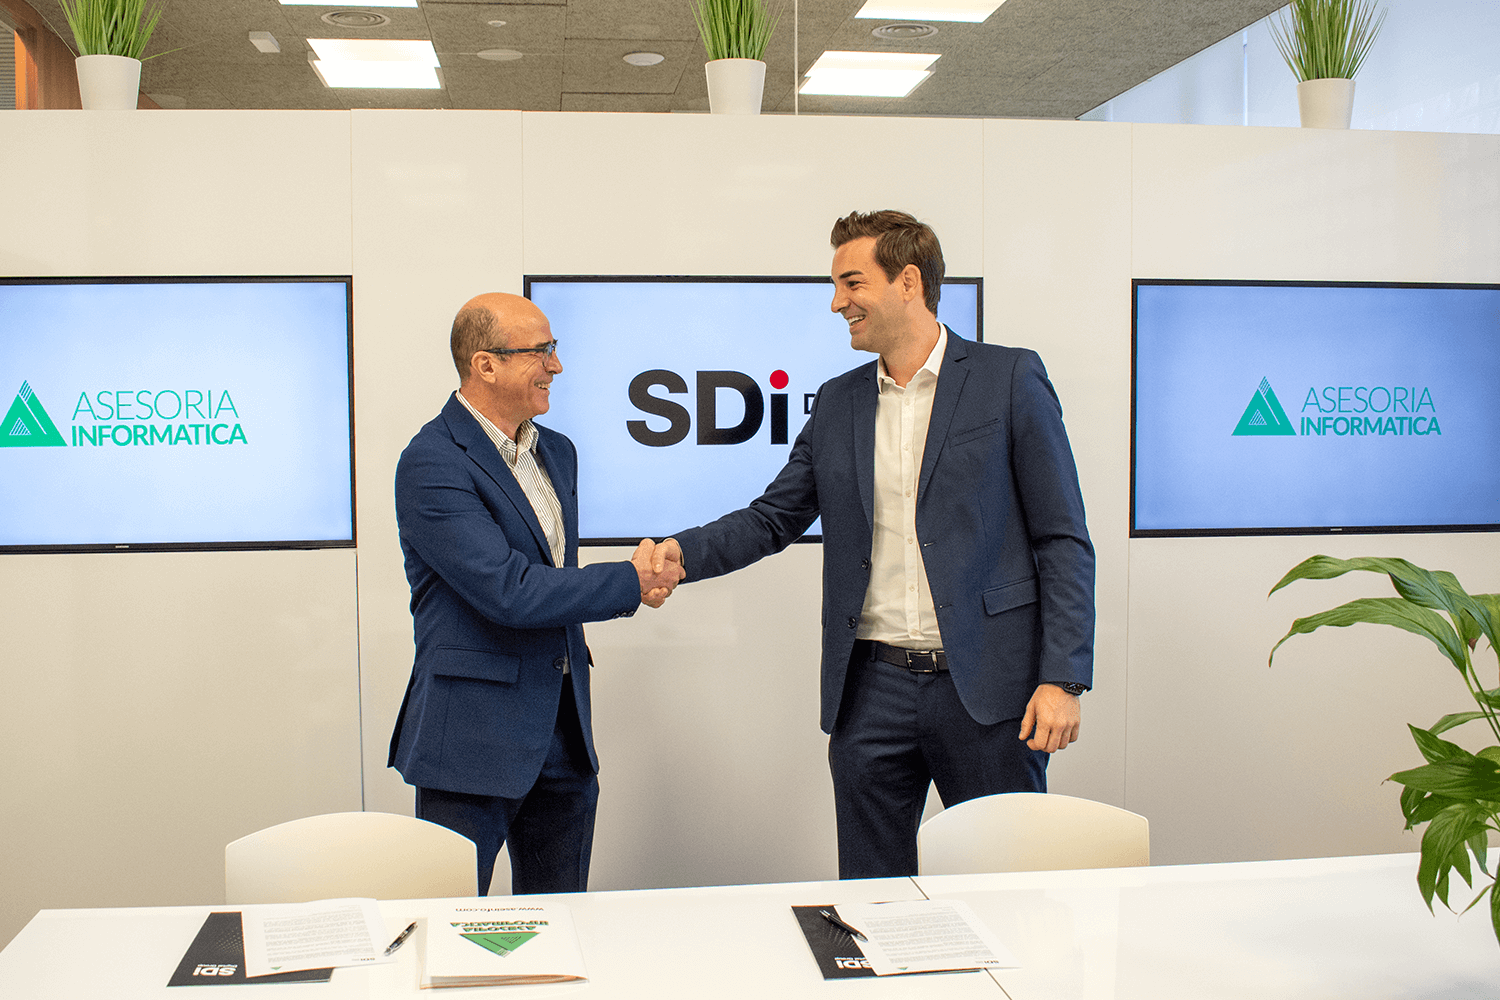 Asesoría Informática se integra en SDi Digital Group consolidando su apuesta por el software de gestión 1